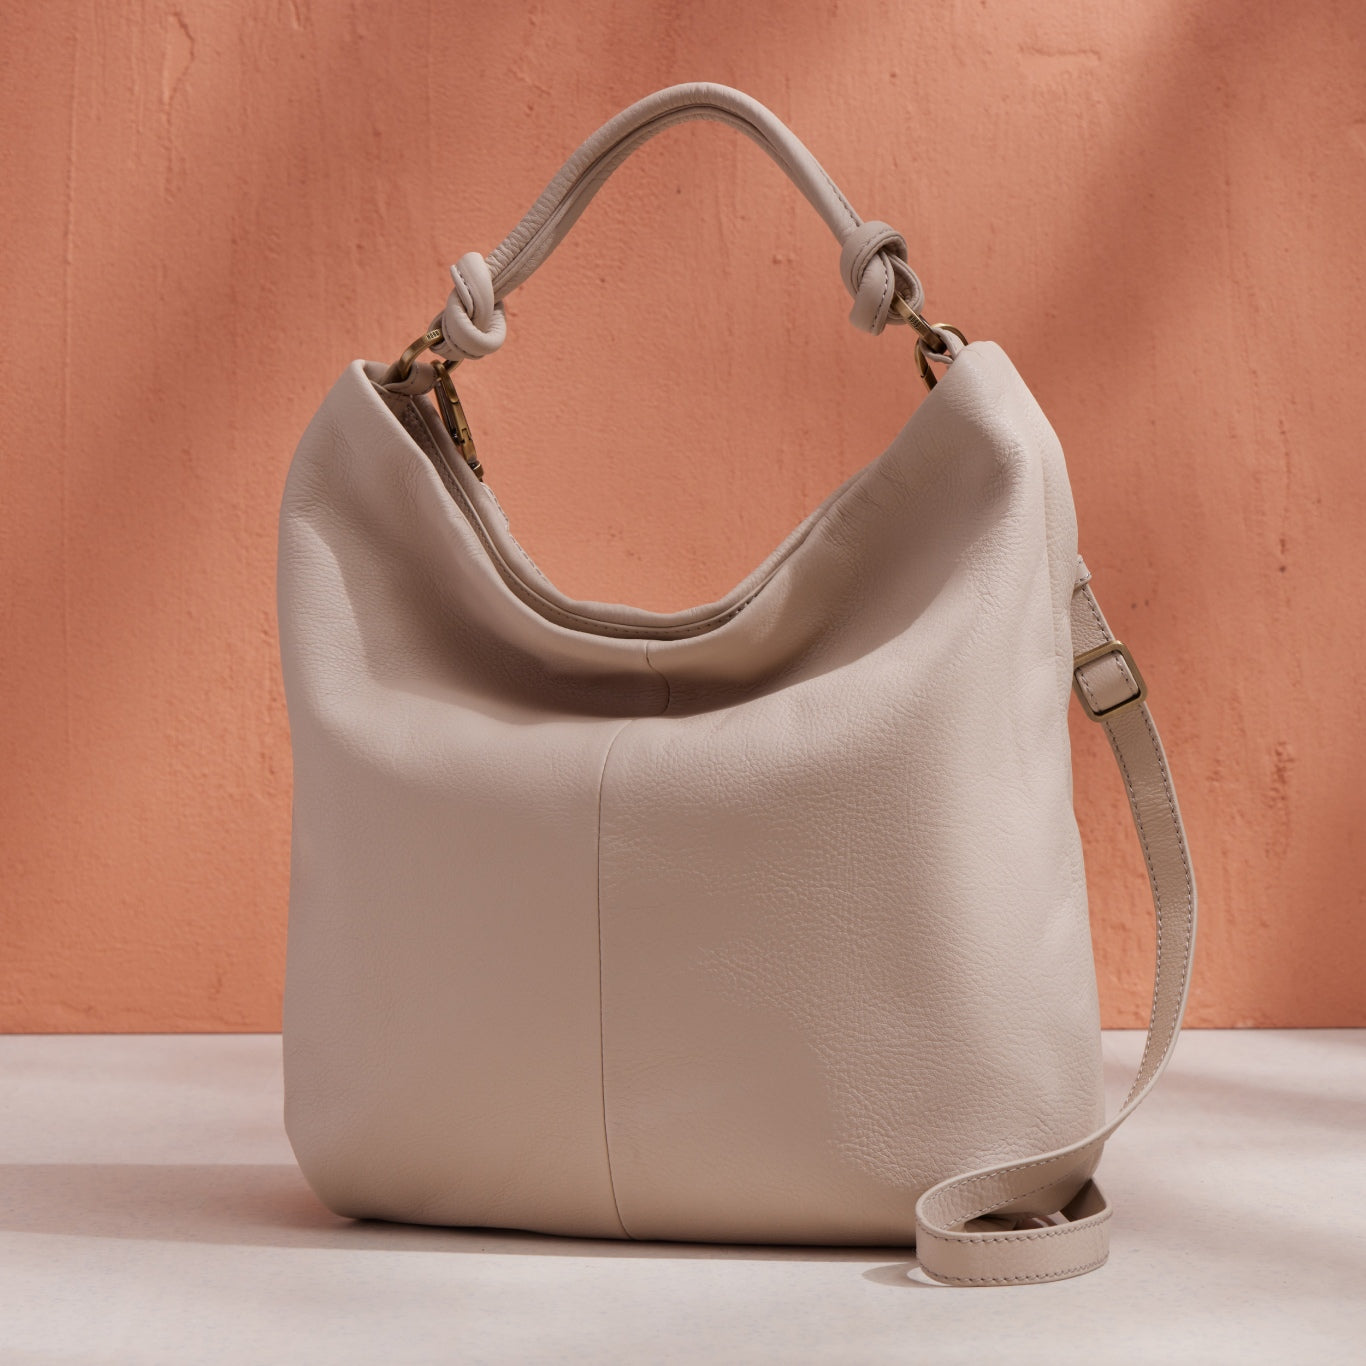 Buy Handbags for Women | Best Tote Handbags Online – Mona B India